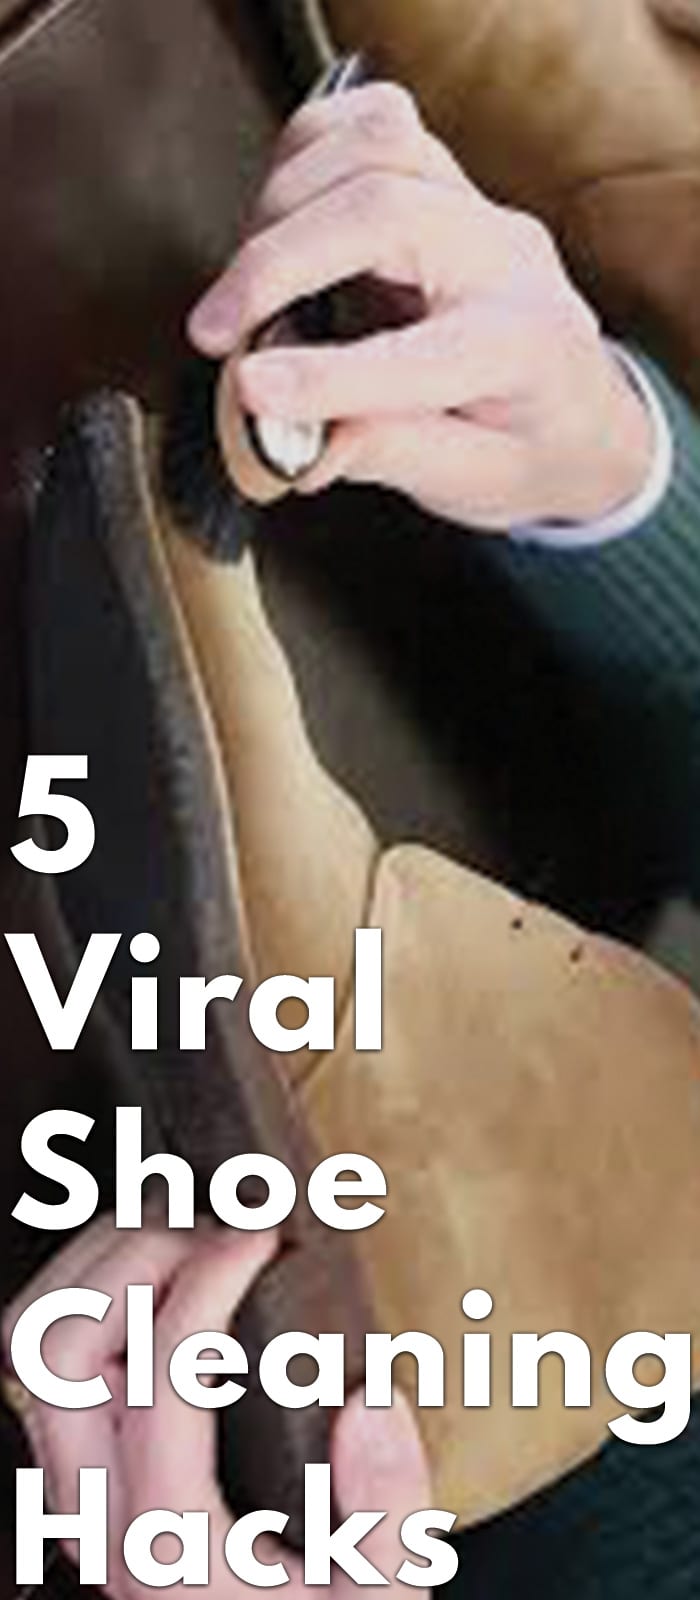 5 Viral Shoe Cleaning Hacks for men